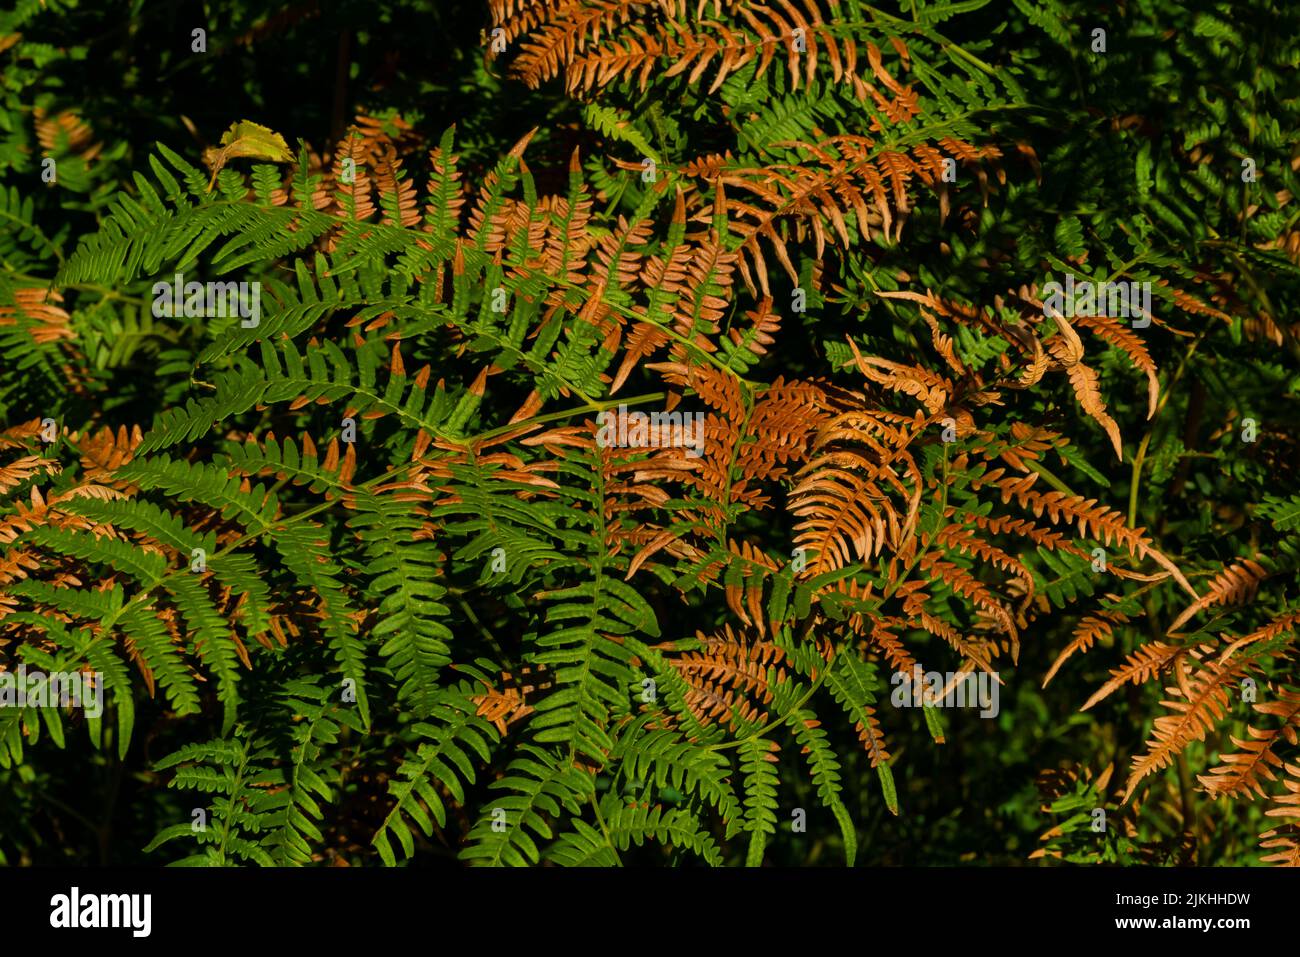 Felce verde in estate nella foresta, foglie marrone scolorito nel periodo di estrema siccità a causa del cambiamento climatico Foto Stock